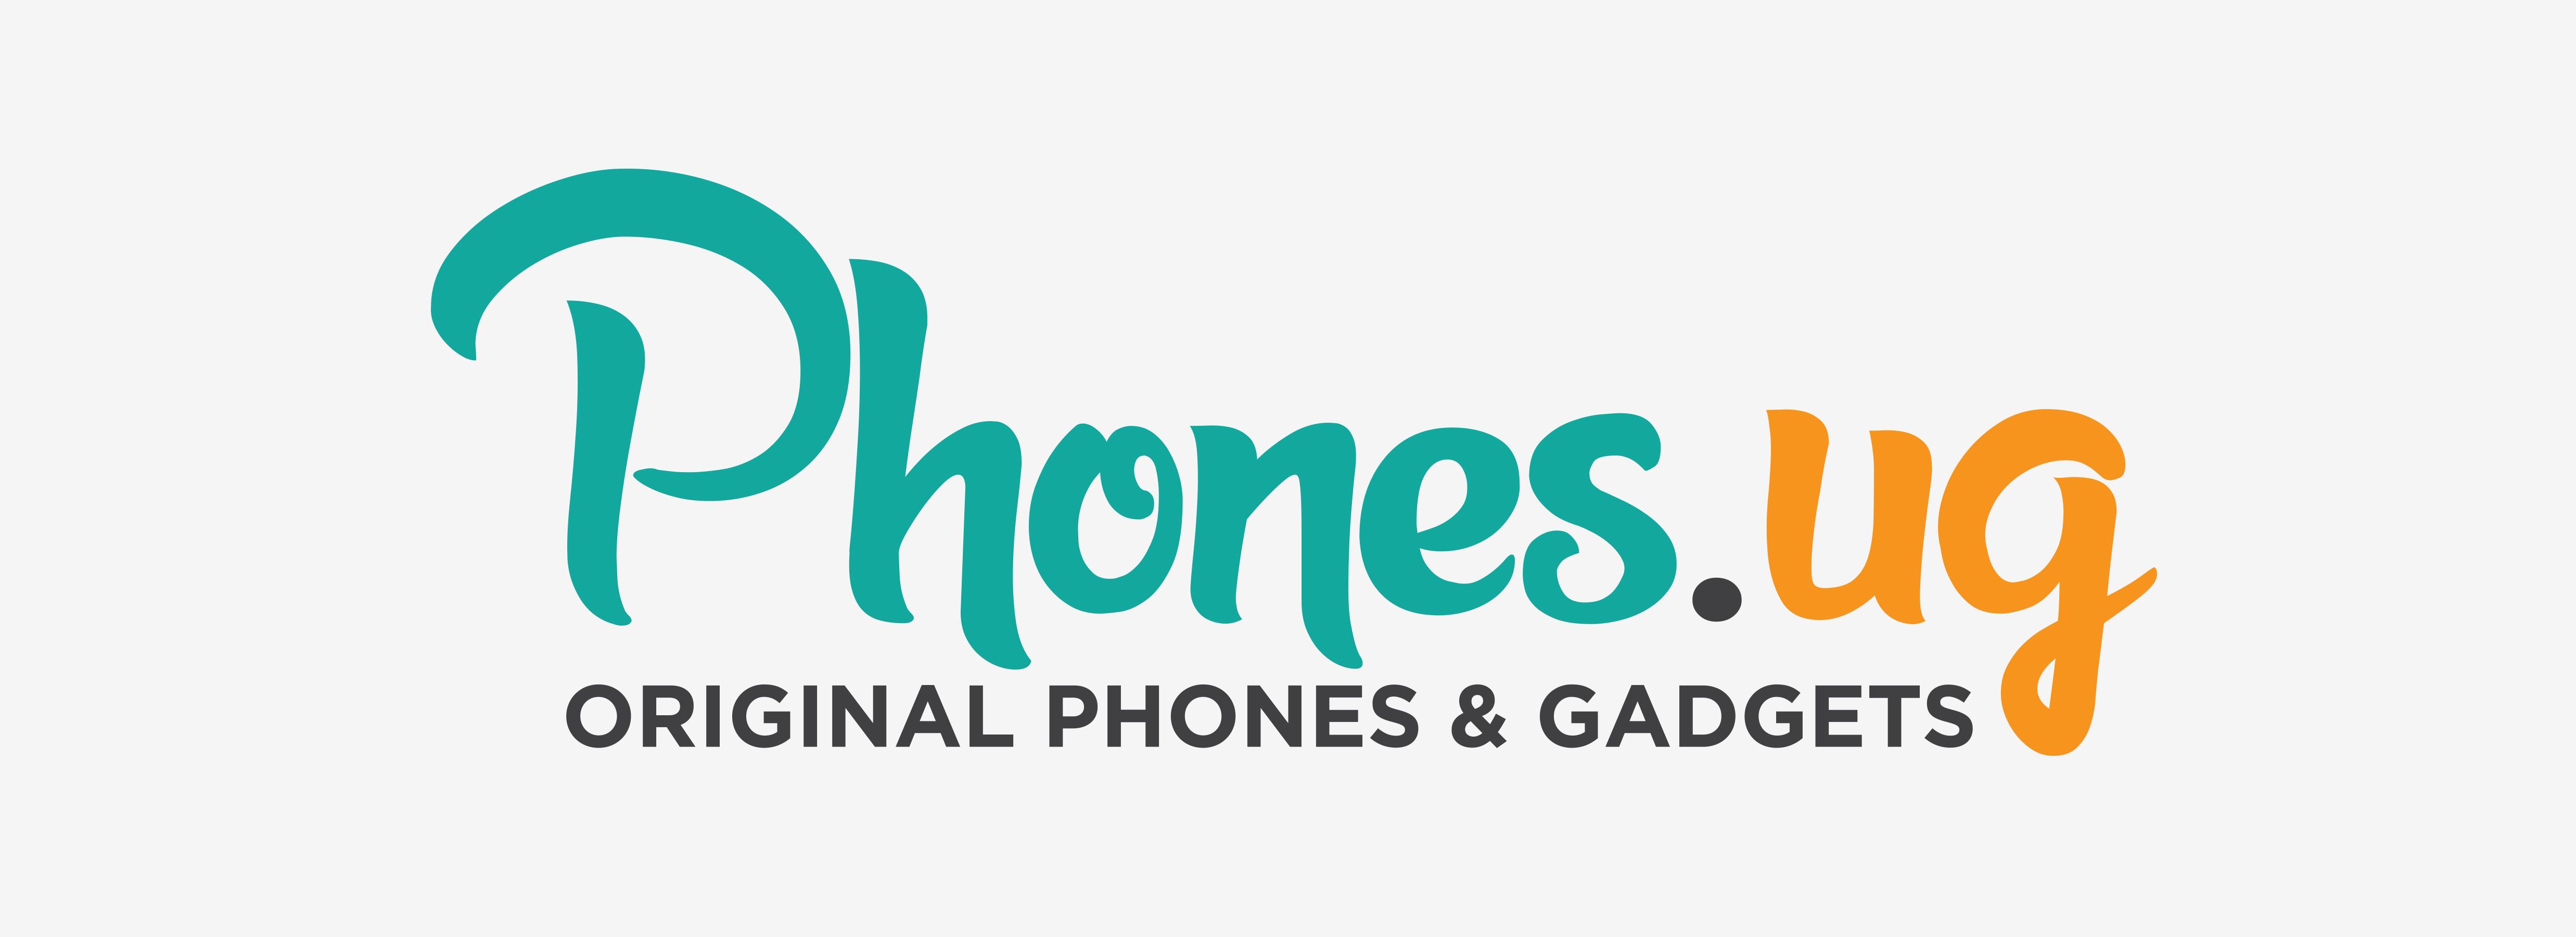 Gideon Logo - Phones.ug